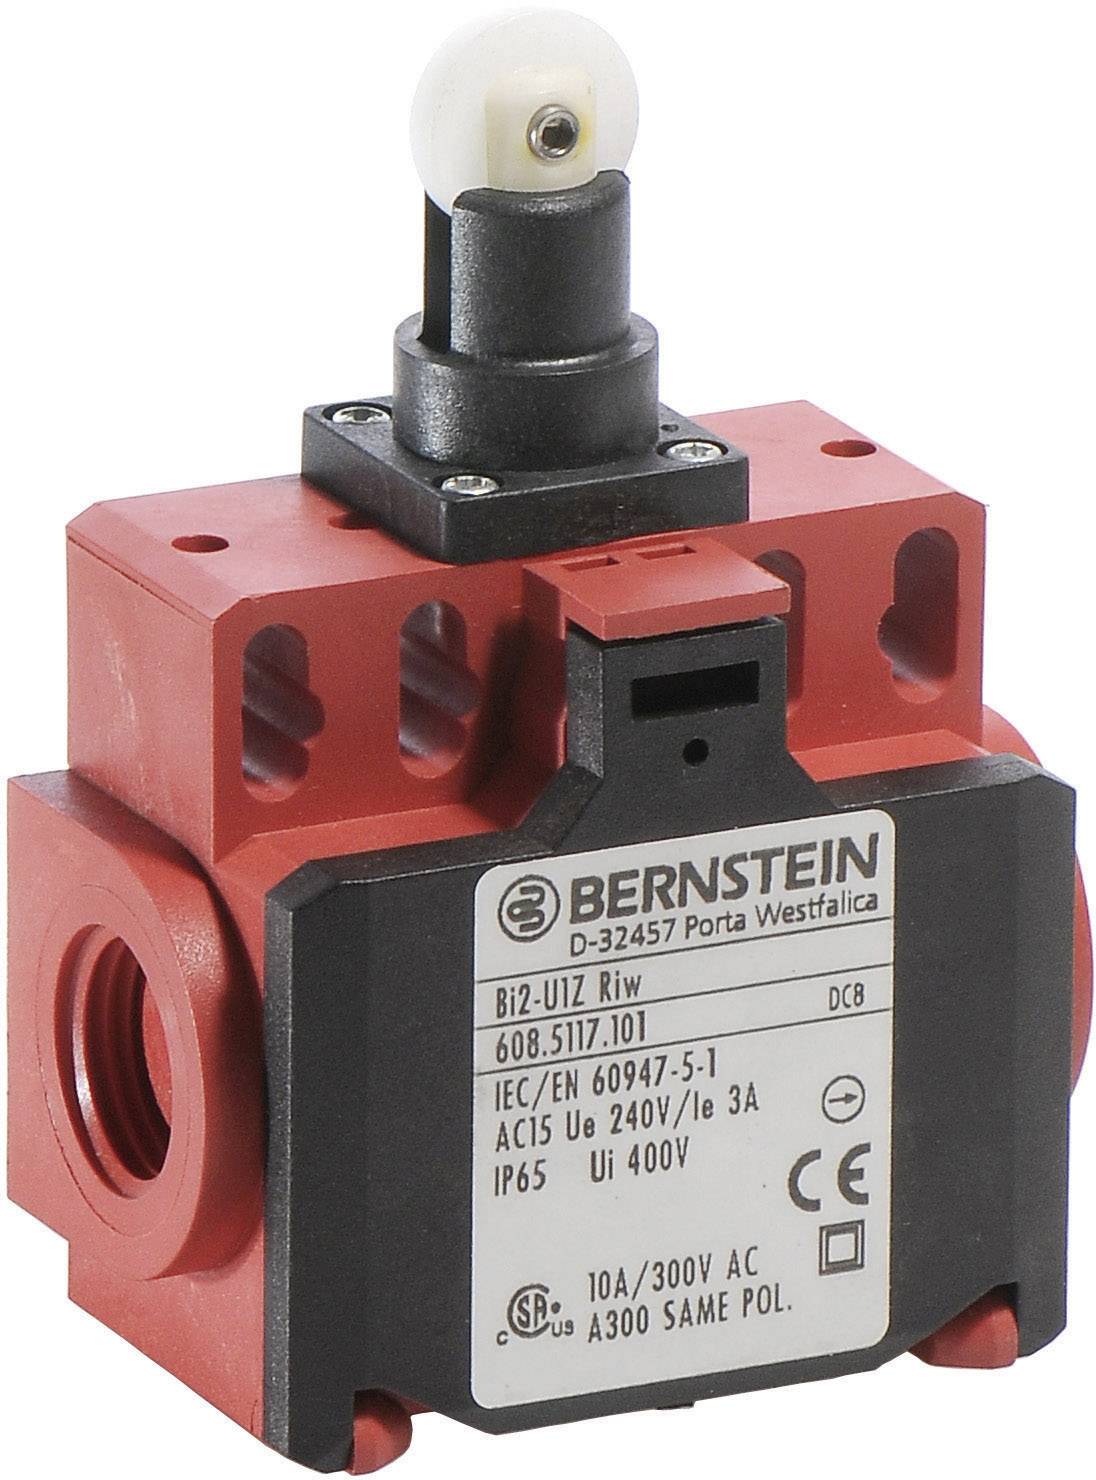 BERNSTEIN AG Endschalter 240 V/AC 10 A Rollenhebel tastend BI2-SU1Z RIW IP65 1 St. (6085167108)